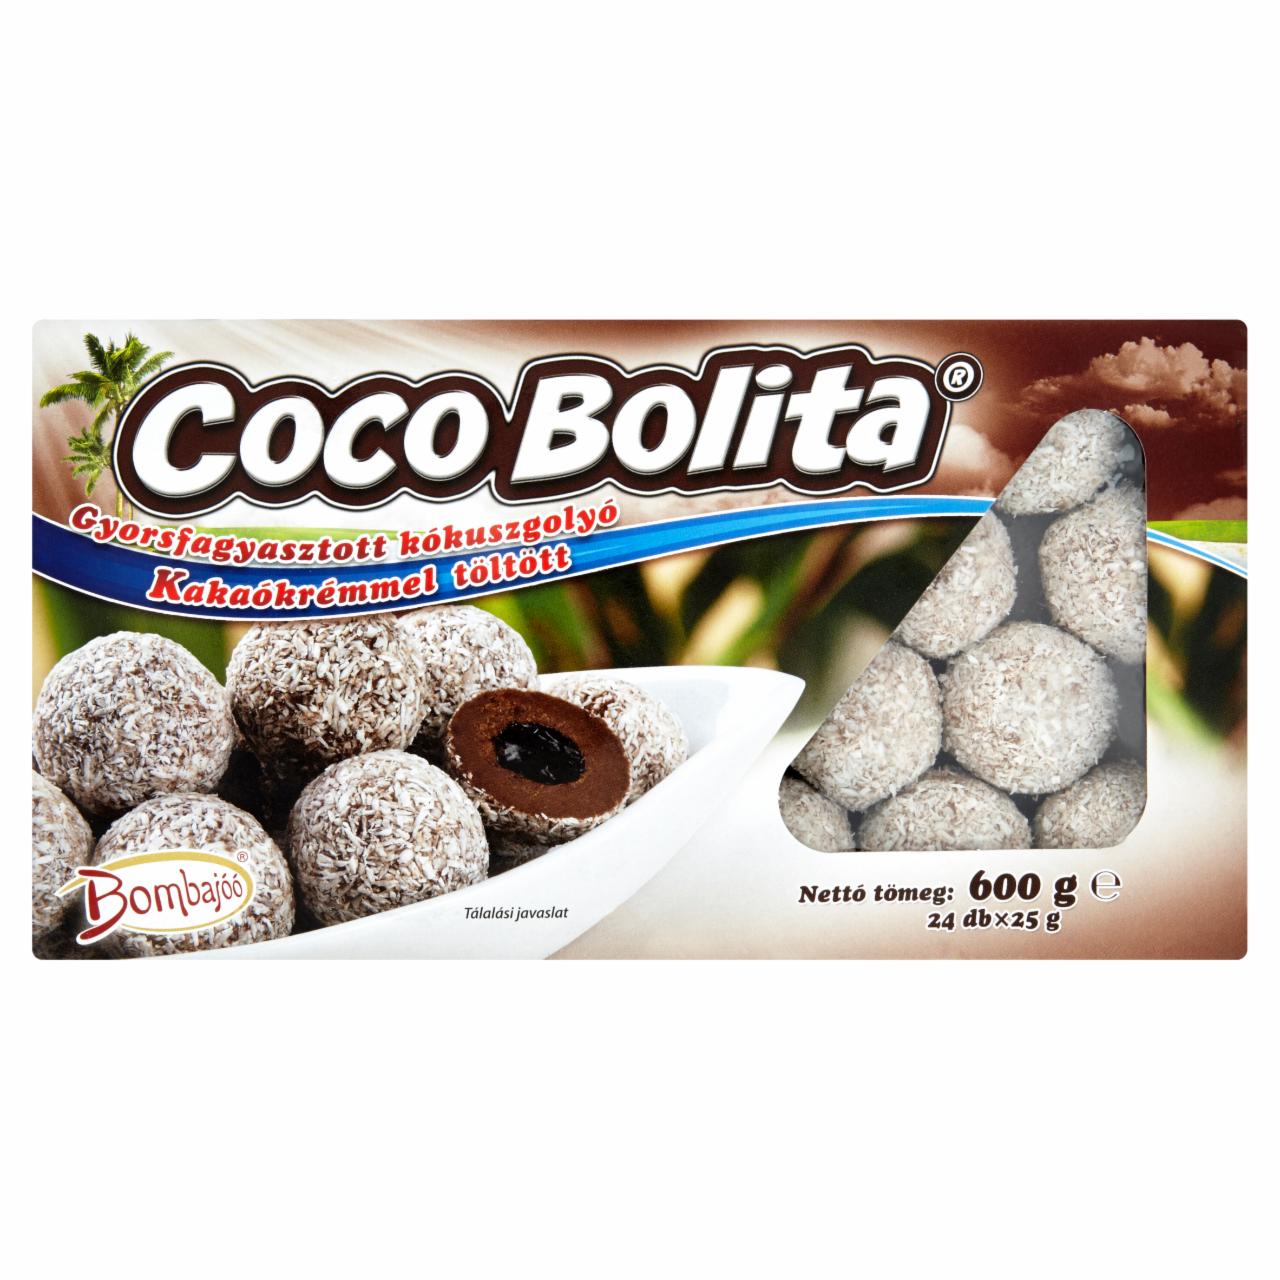 Képek - Bombajóó Coco Bolita gyorsfagyaszott kakaókrémmel töltött kókuszgolyó 24 db 600 g